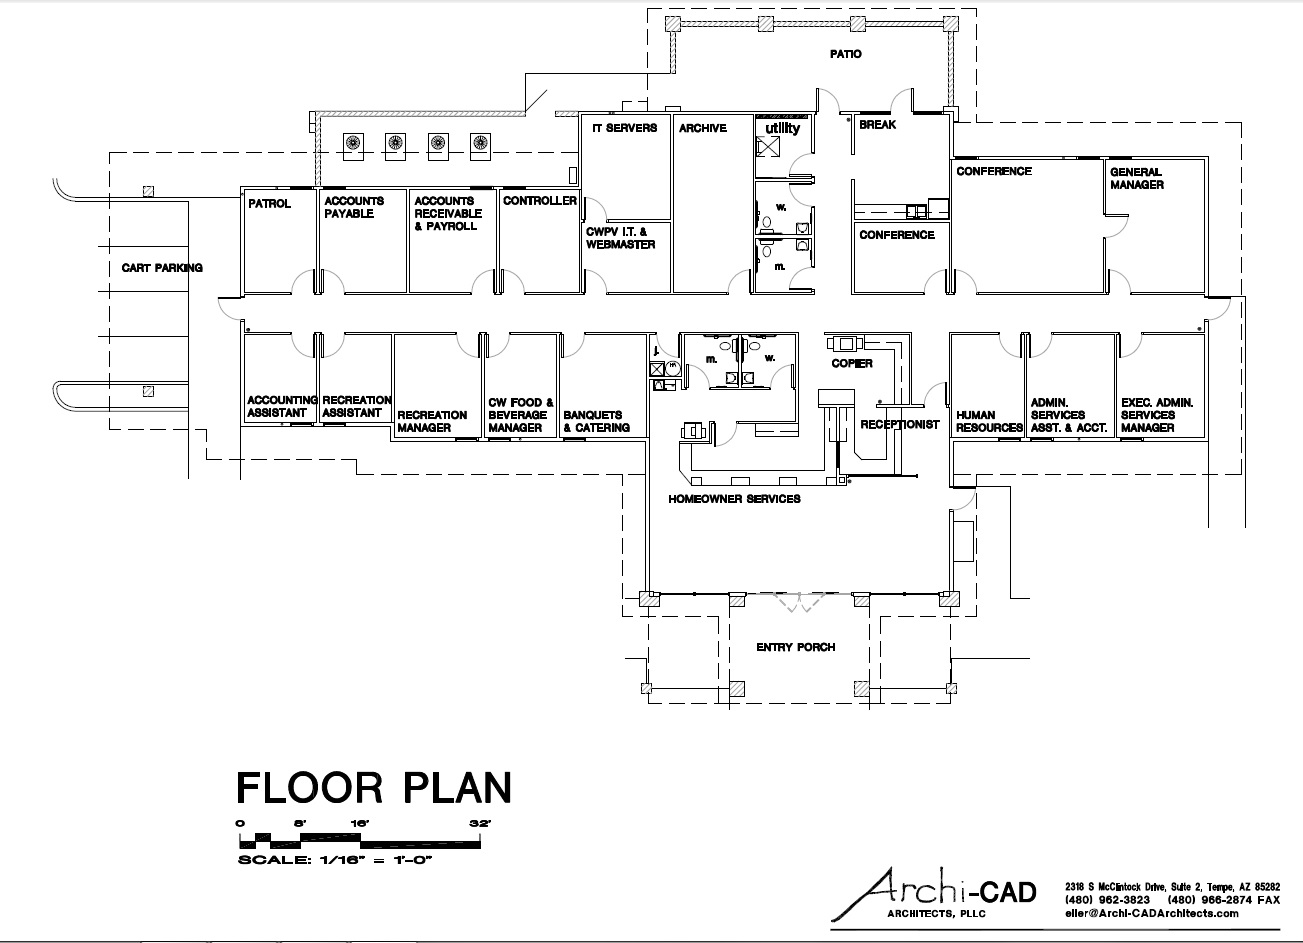 Admin Building Floor Plan